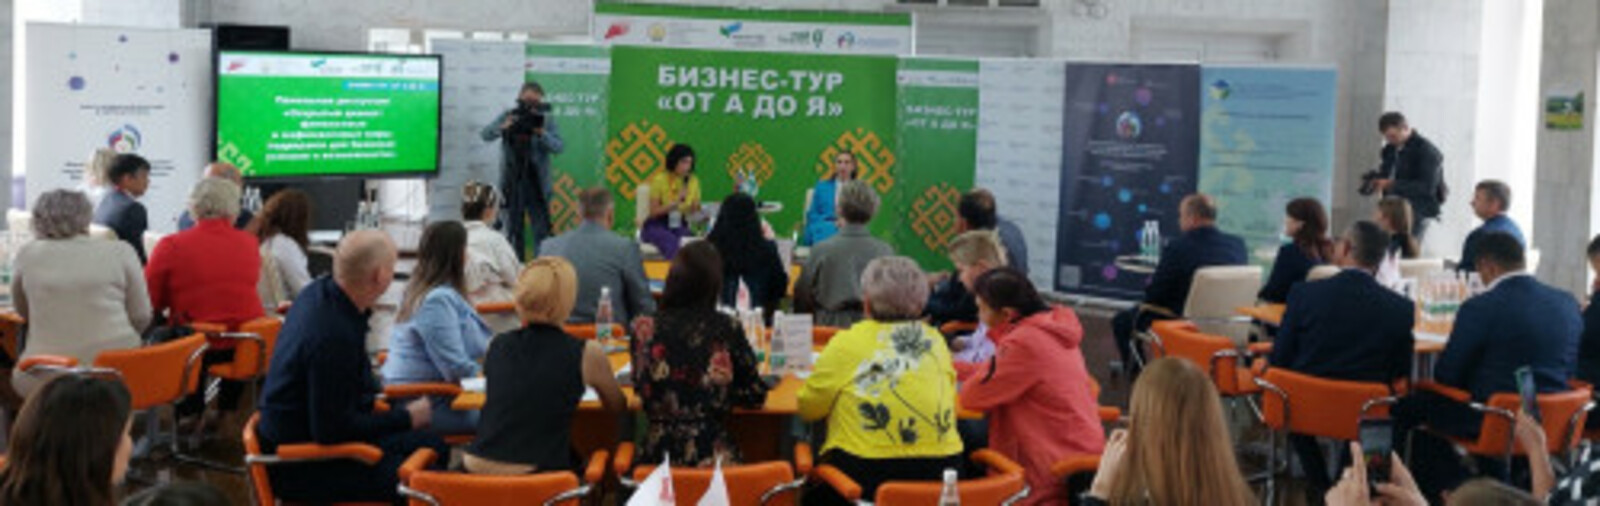 Предприниматели 13 муниципальных образований Башкирии приняли участие в Бизнес-туре «От А до Я»